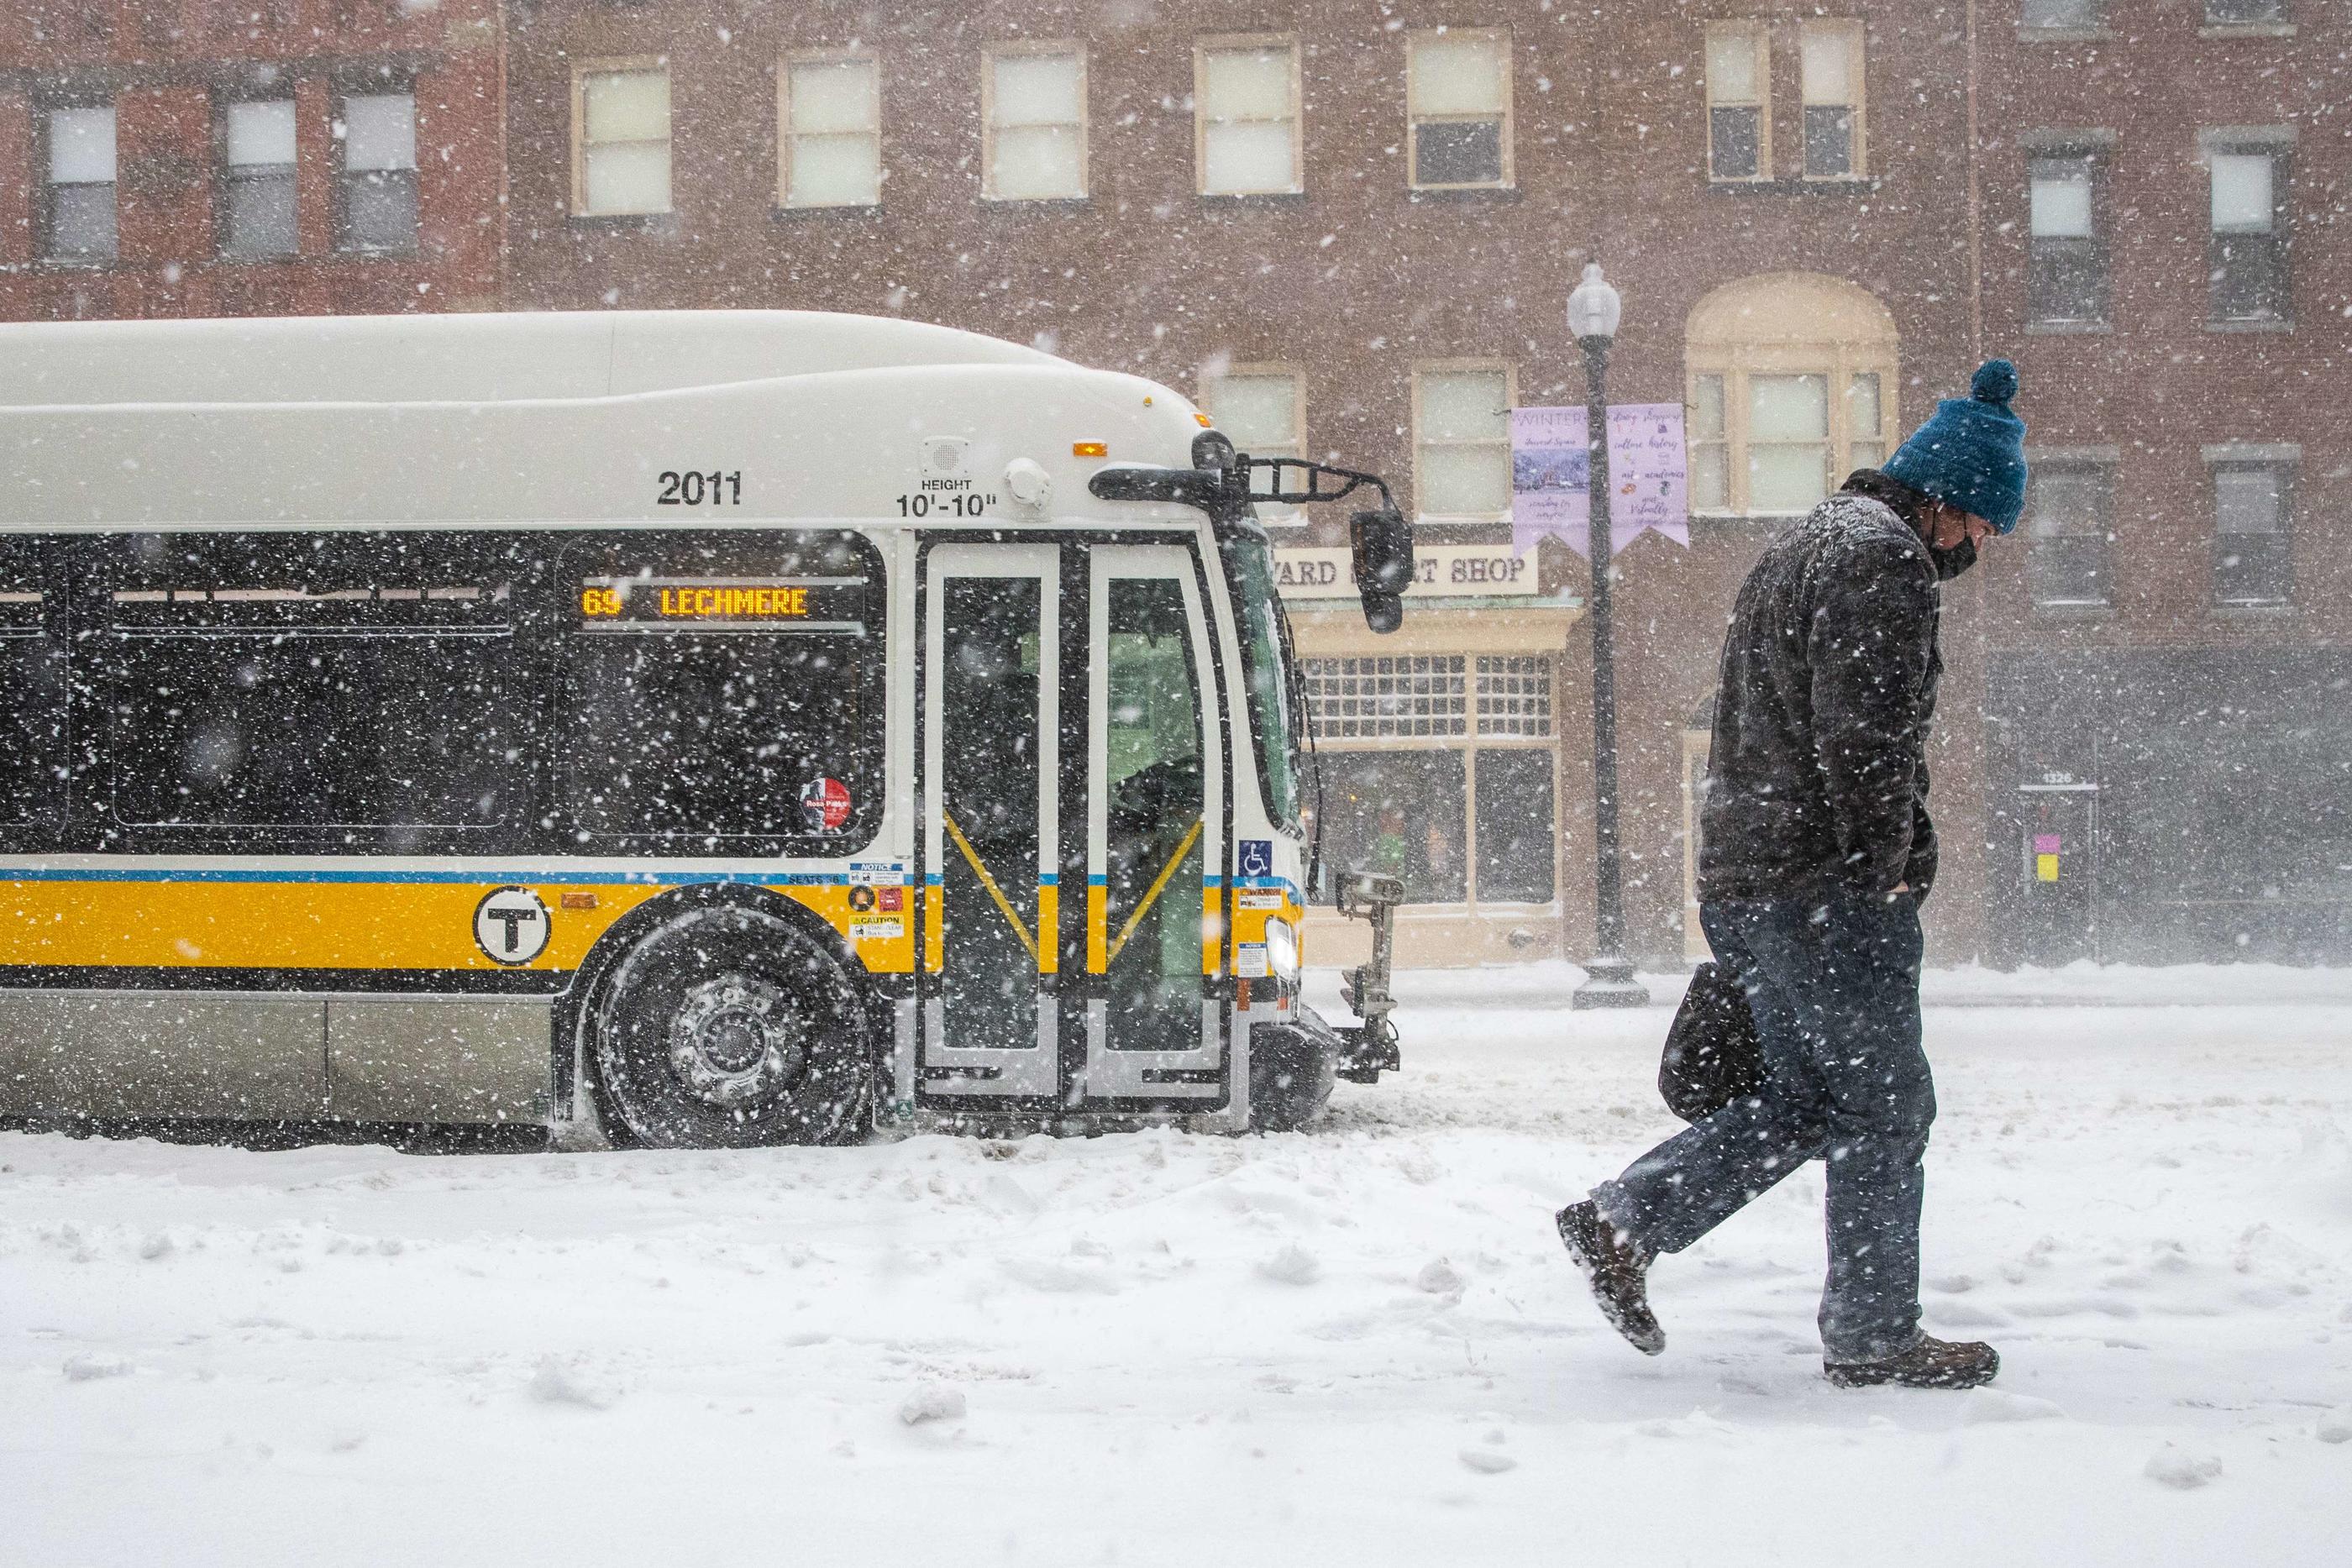 Boston sous 60cm de neige, un record: une «bombe cyclonique» aux Etats-Unis  - La Voix du Nord